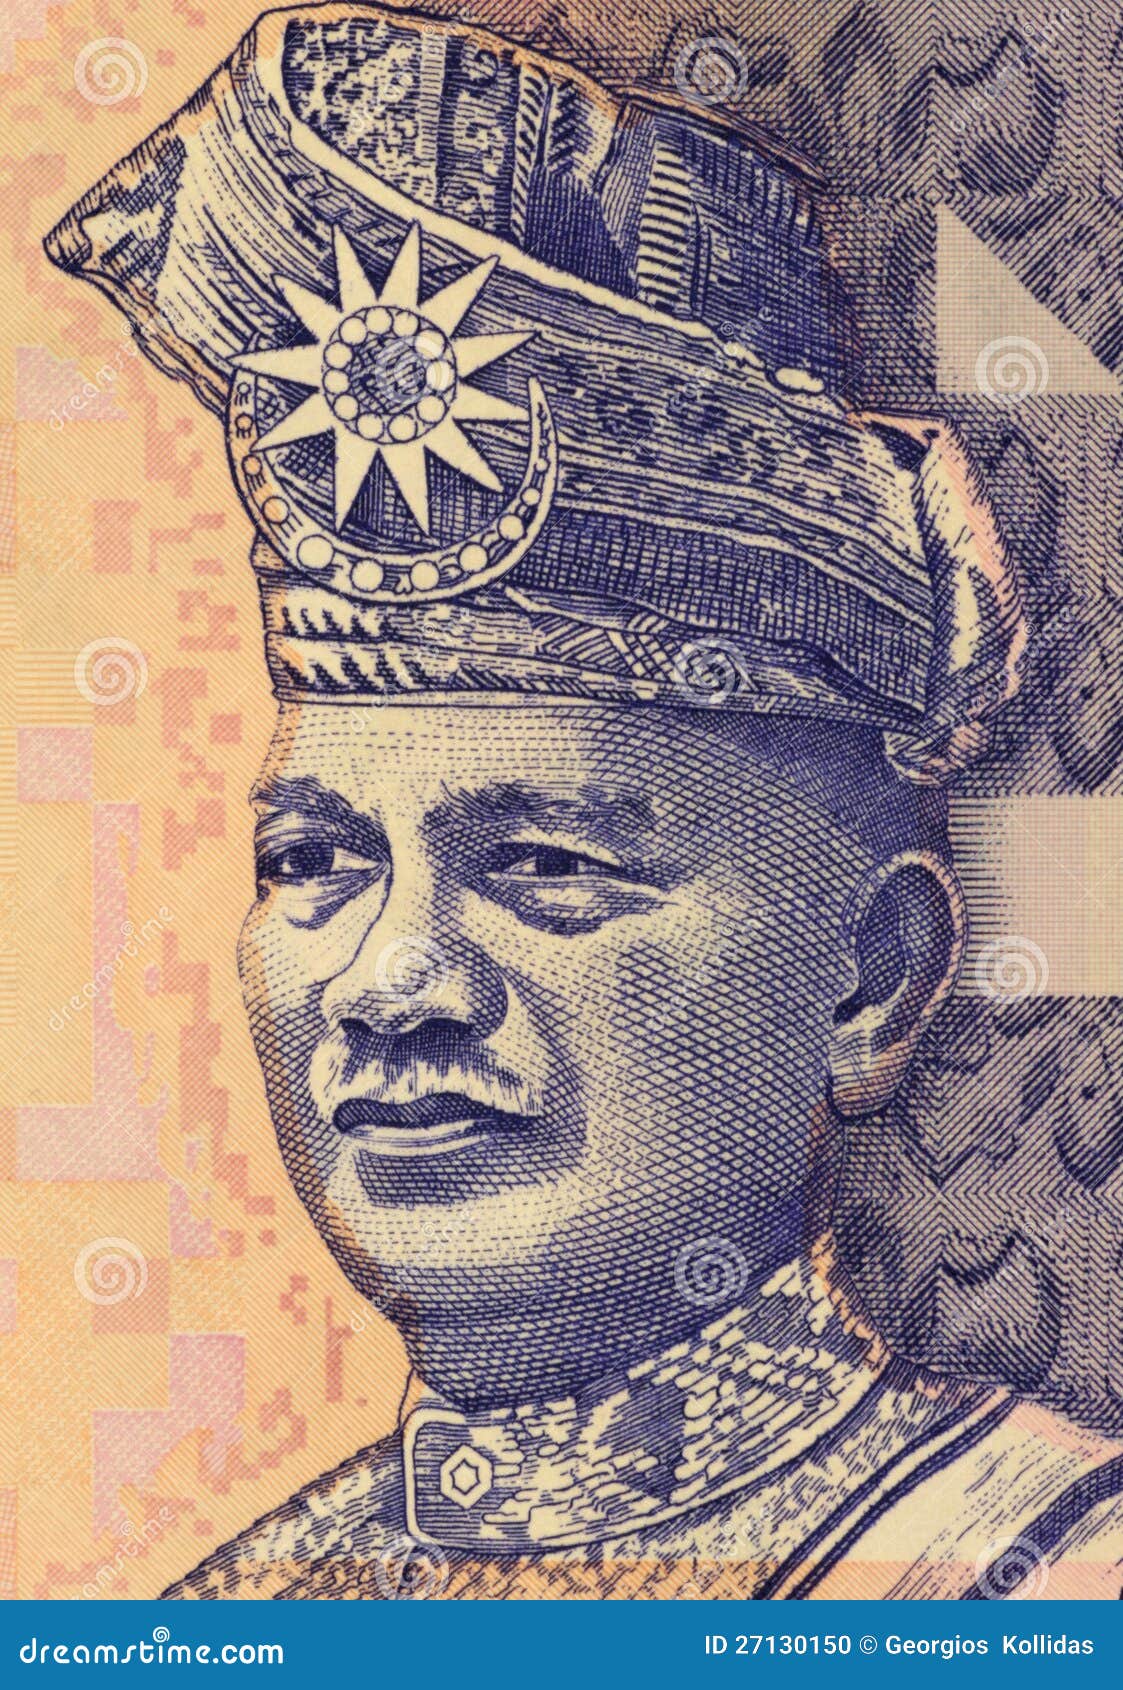 Abdul Rahman of Negeri Sembilan